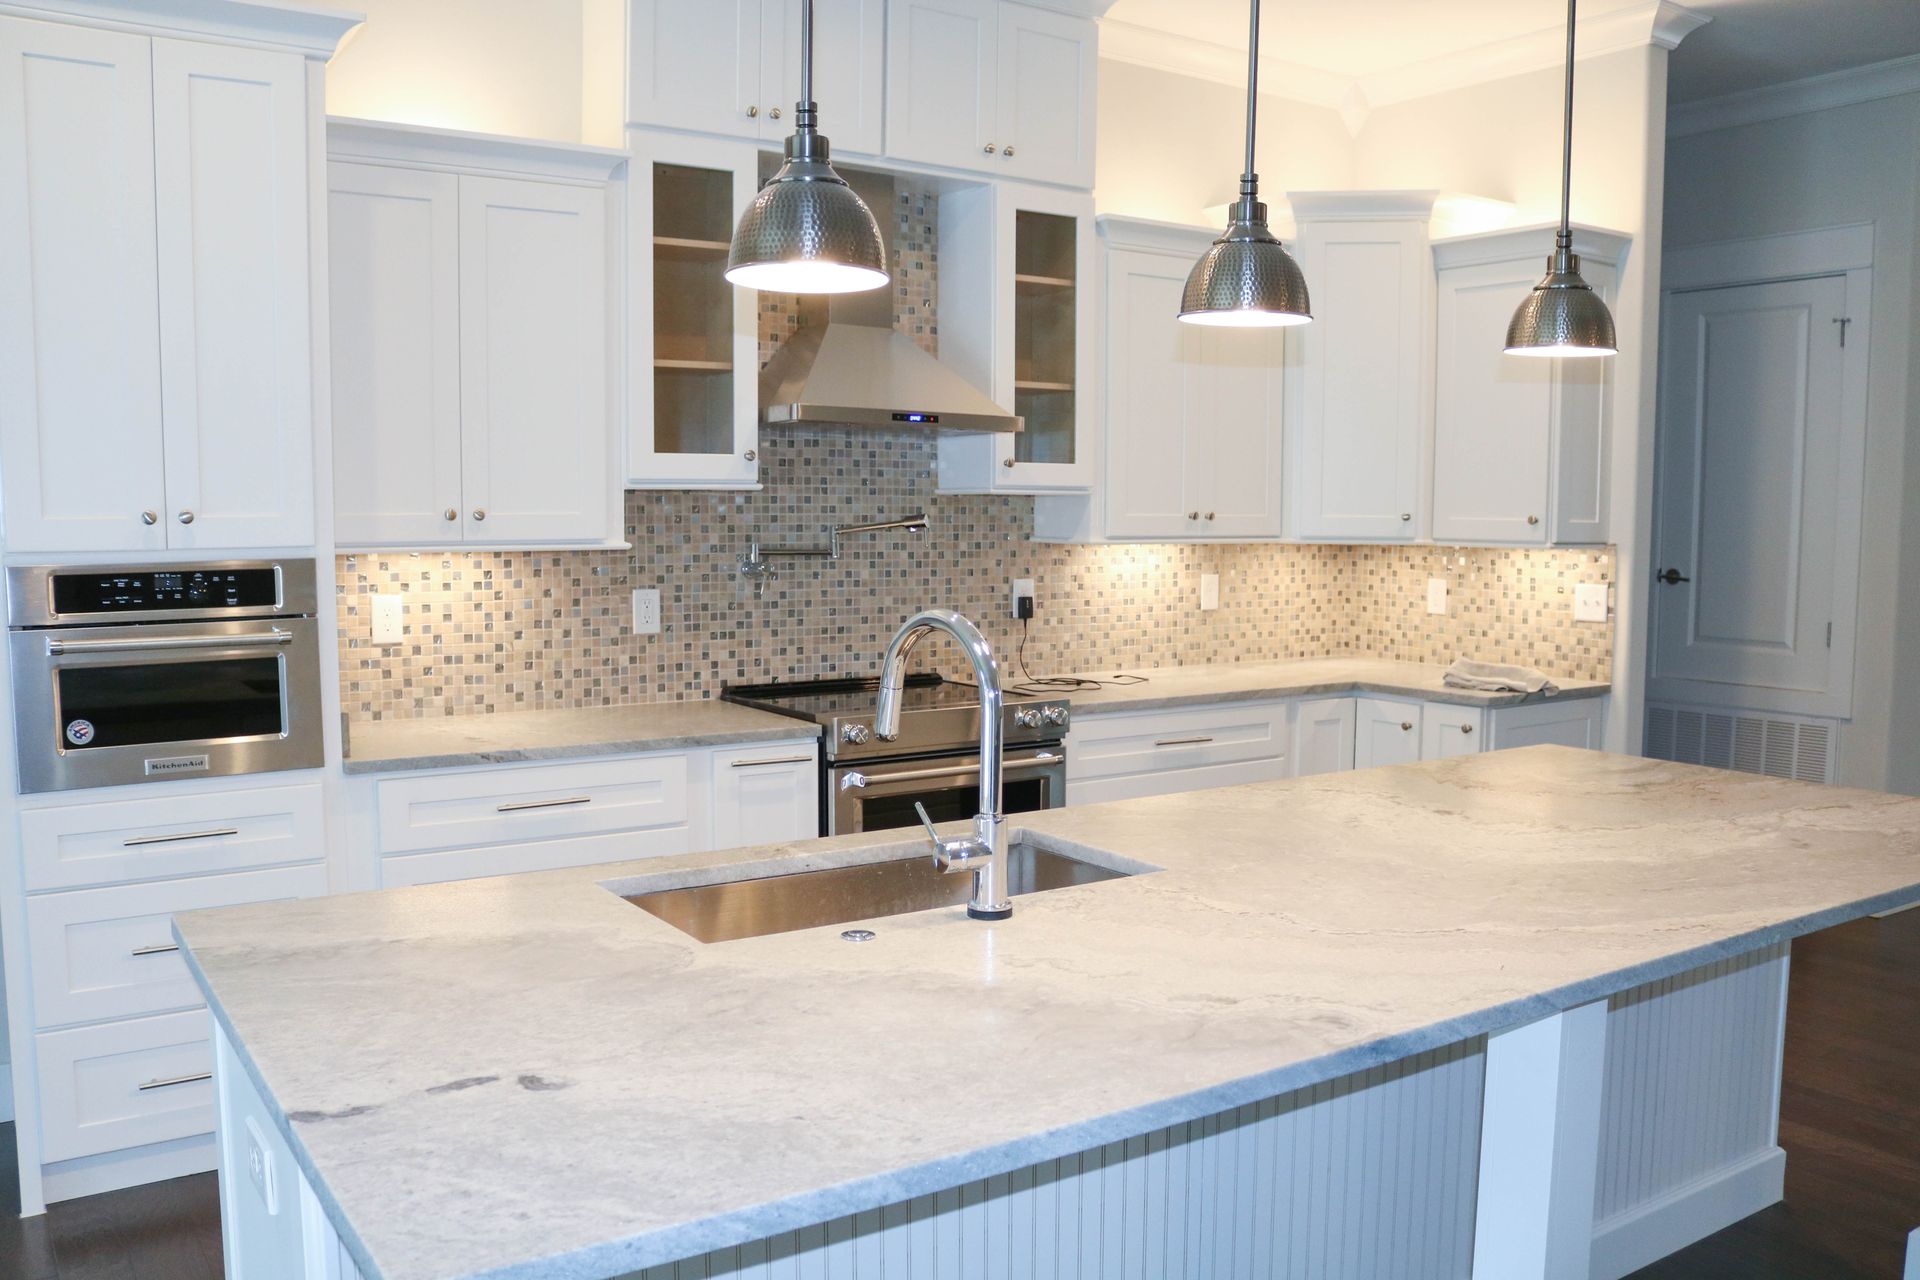 Matte granite kitchen countertops in elegant white and gray color palette.